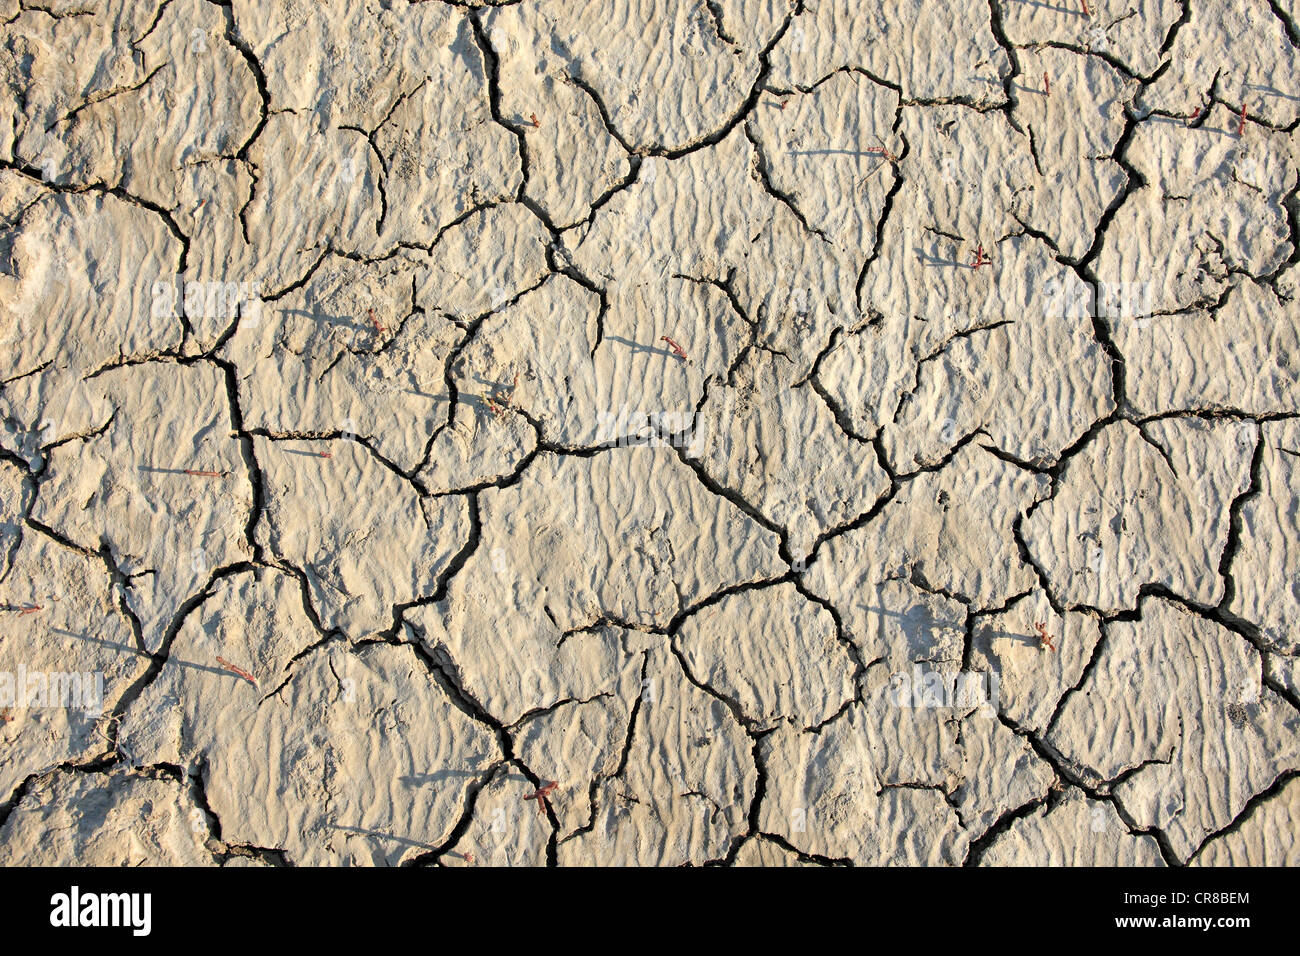 Parched soil surface, Saintes-Marie-de-la-Mer, Bouches du Rhone, Camargue, France, Europe Stock Photo